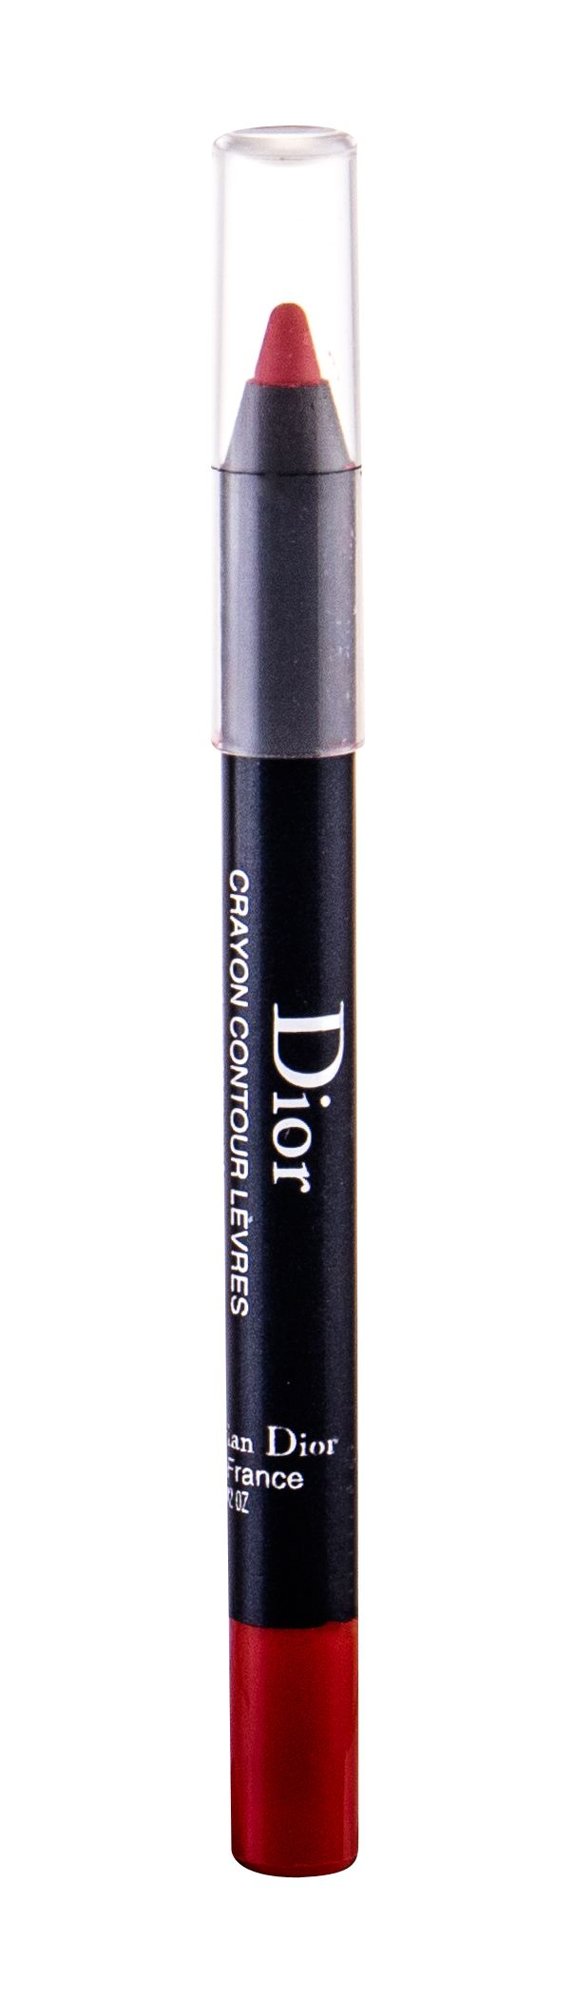 Christian Dior Lipliner Pencil lūpų pieštukas